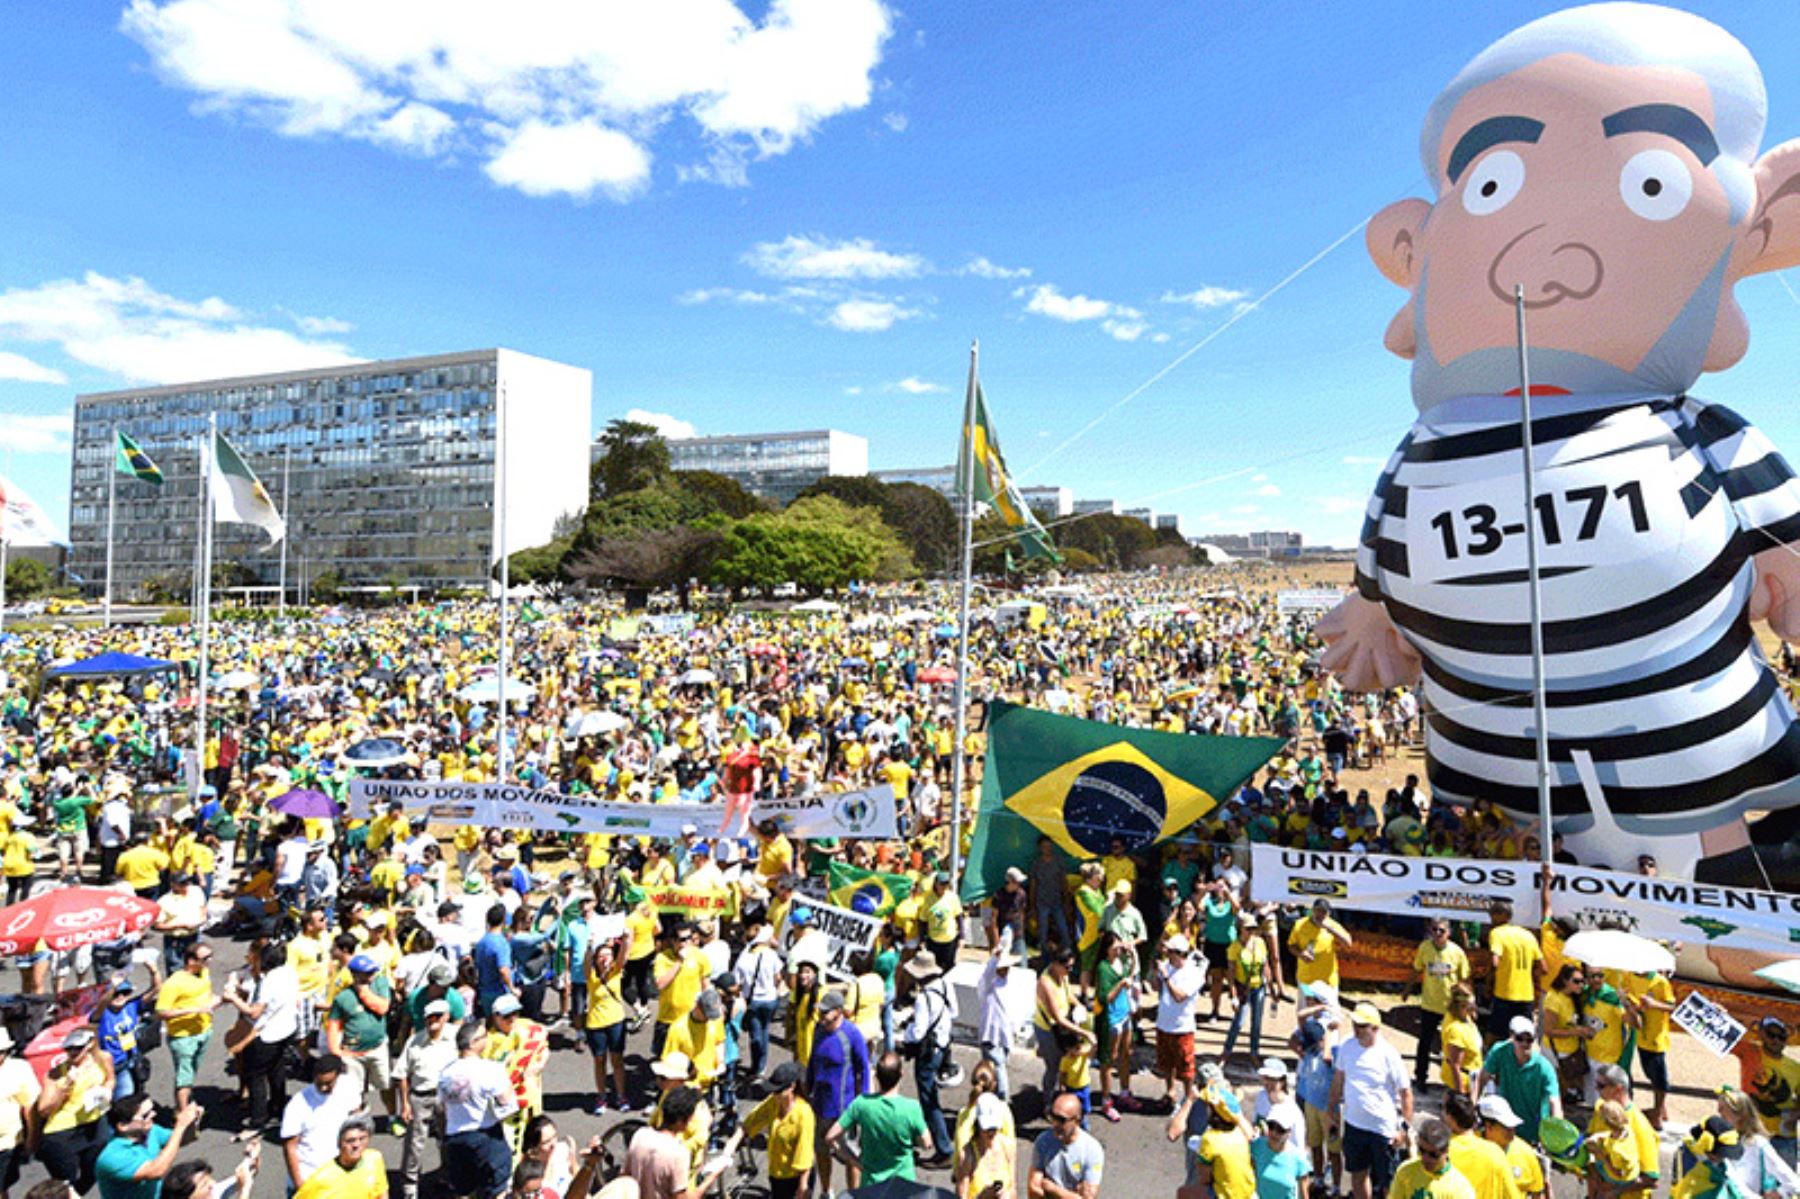 Los escándalos de corrupción han generado una crisis política en Brasil y protestas sociales. AFP